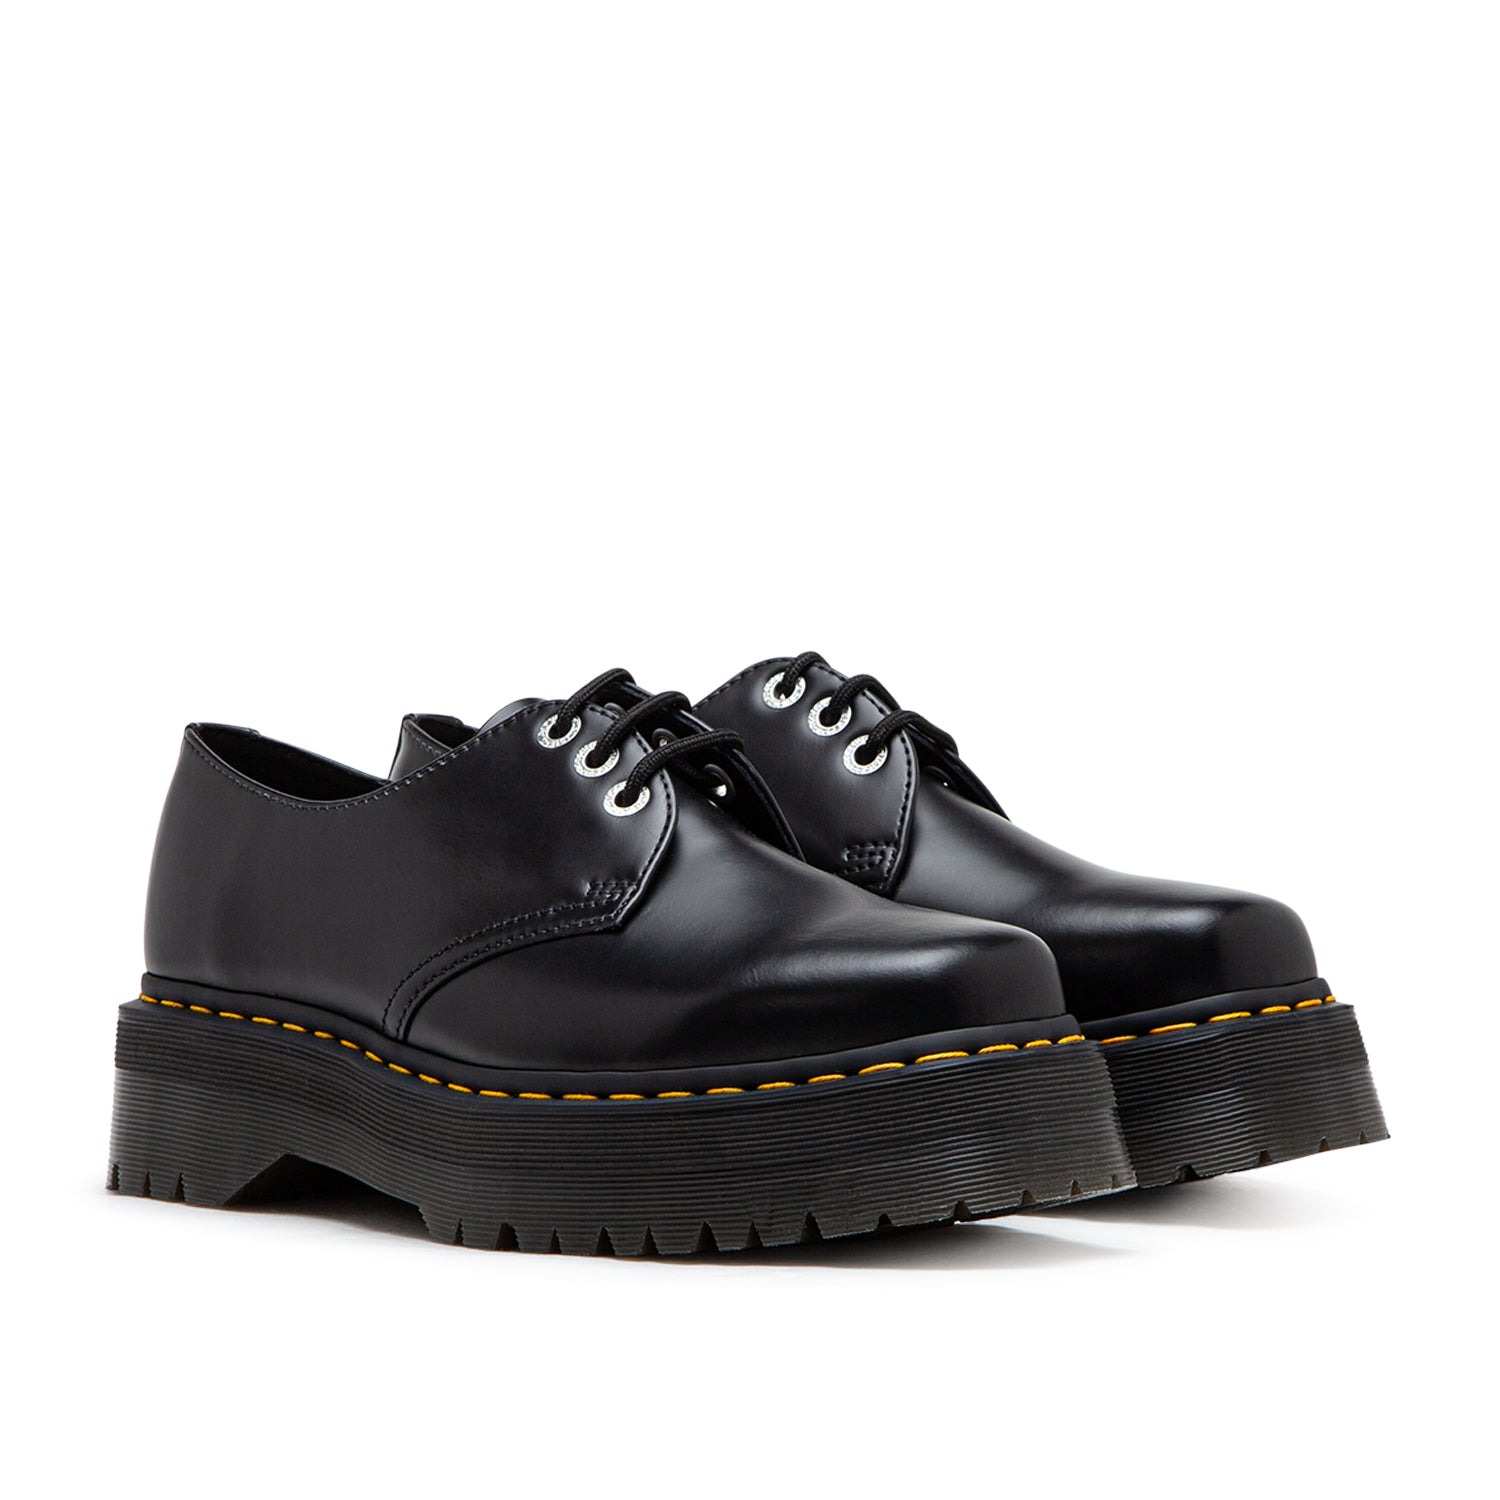 Dr. Martens 1461 Quad Squared Toe Leather Shoes (Schwarz)  - Cheap Juzsports Jordan Outlet